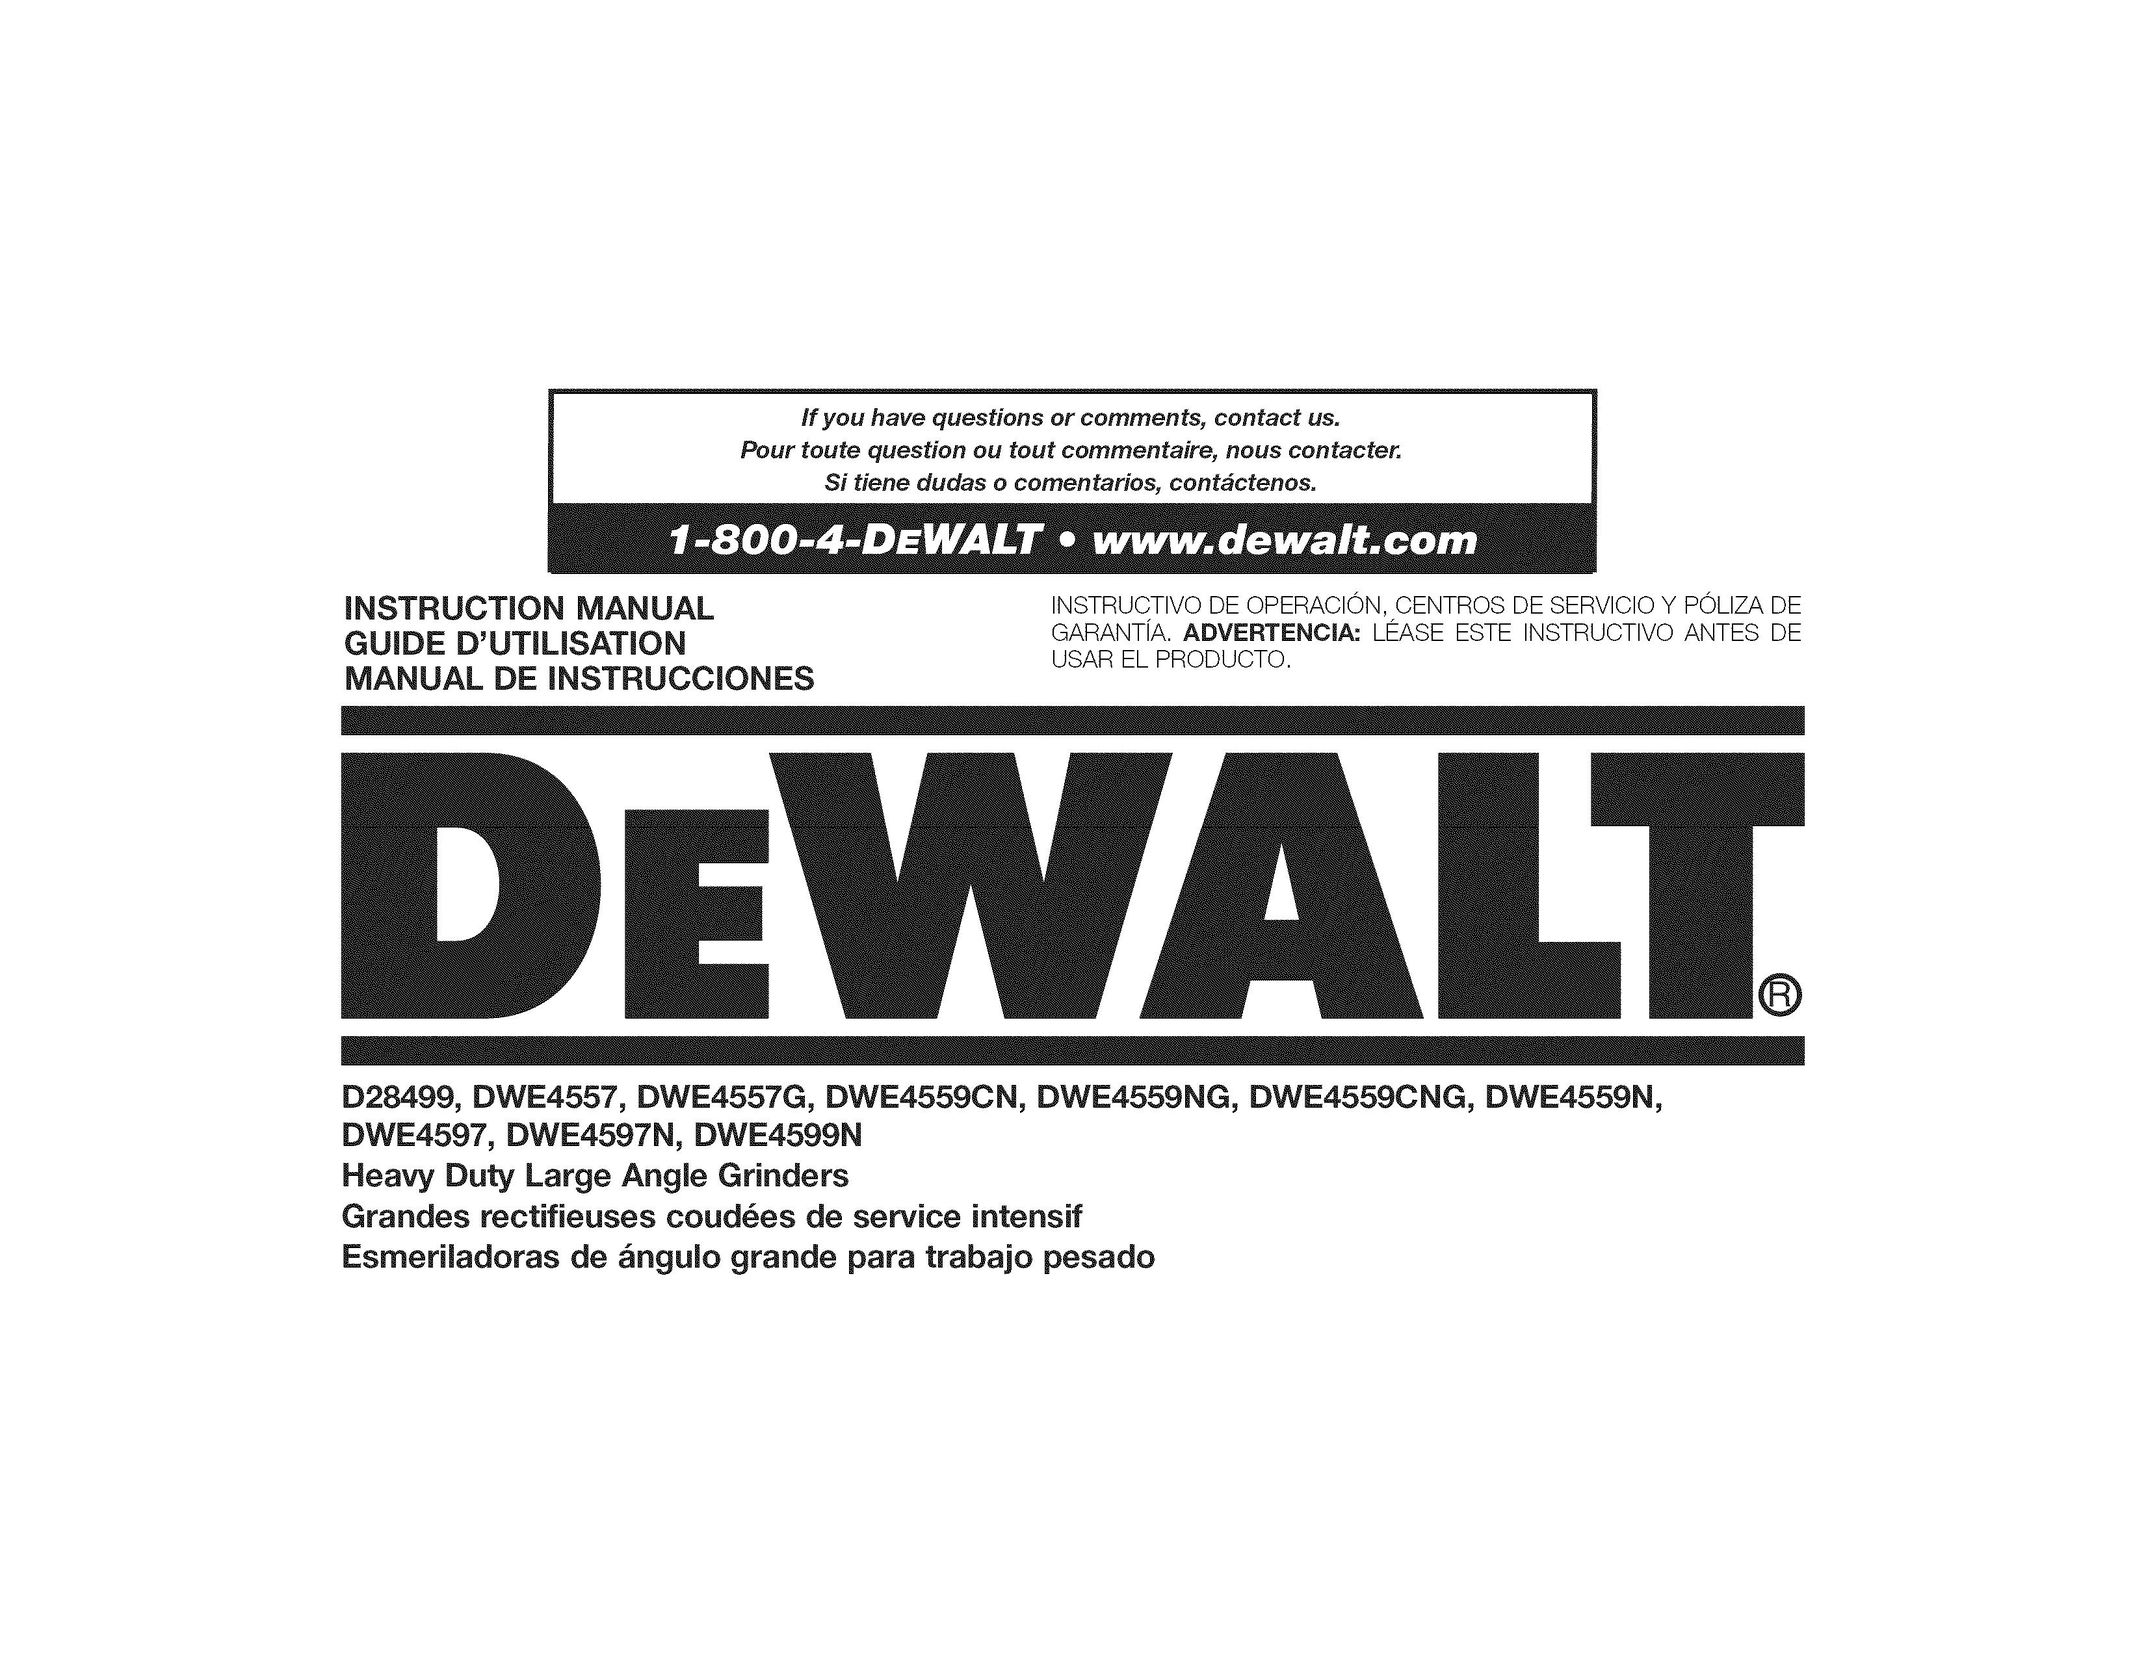 DeWalt DWE4559CN Grinder User Manual